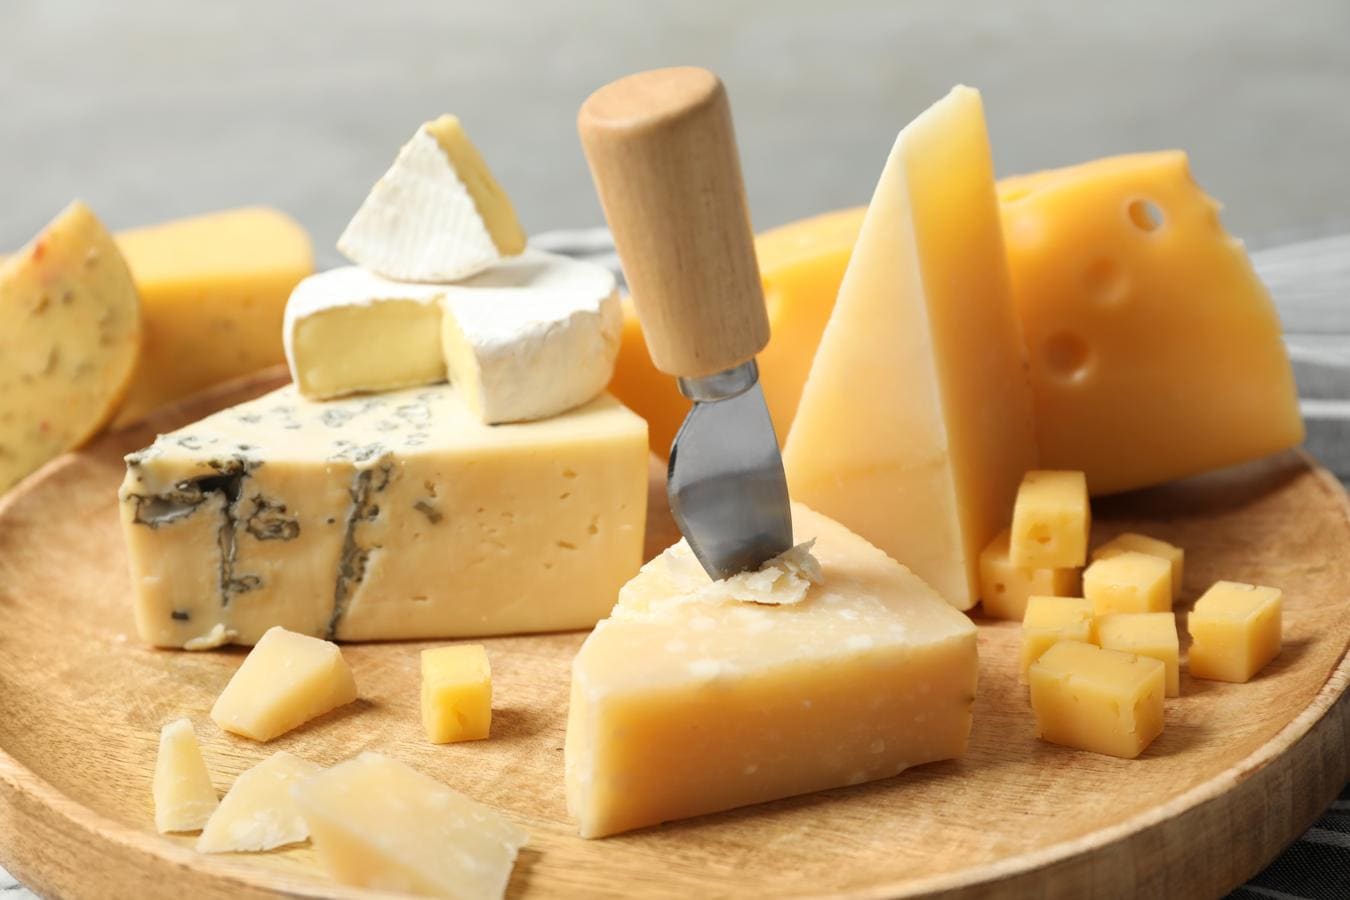 Queso. Si pensabas que el queso era una principal<a href="https://www.abc.es/bienestar/alimentacion/abci-alimentos-tienen-tanto-calcio-303053325379-20191027015740_galeria.html" target="_blank"> fuente de calcio</a>, te falta información: también lo es de probióticos para nuestra dieta. Las variedades de queso más blandos, como los quesos frescos, la mozzarella o el cottage no solo tienen un gran aporte de calcio, también ayudan a nuestra microbiota.